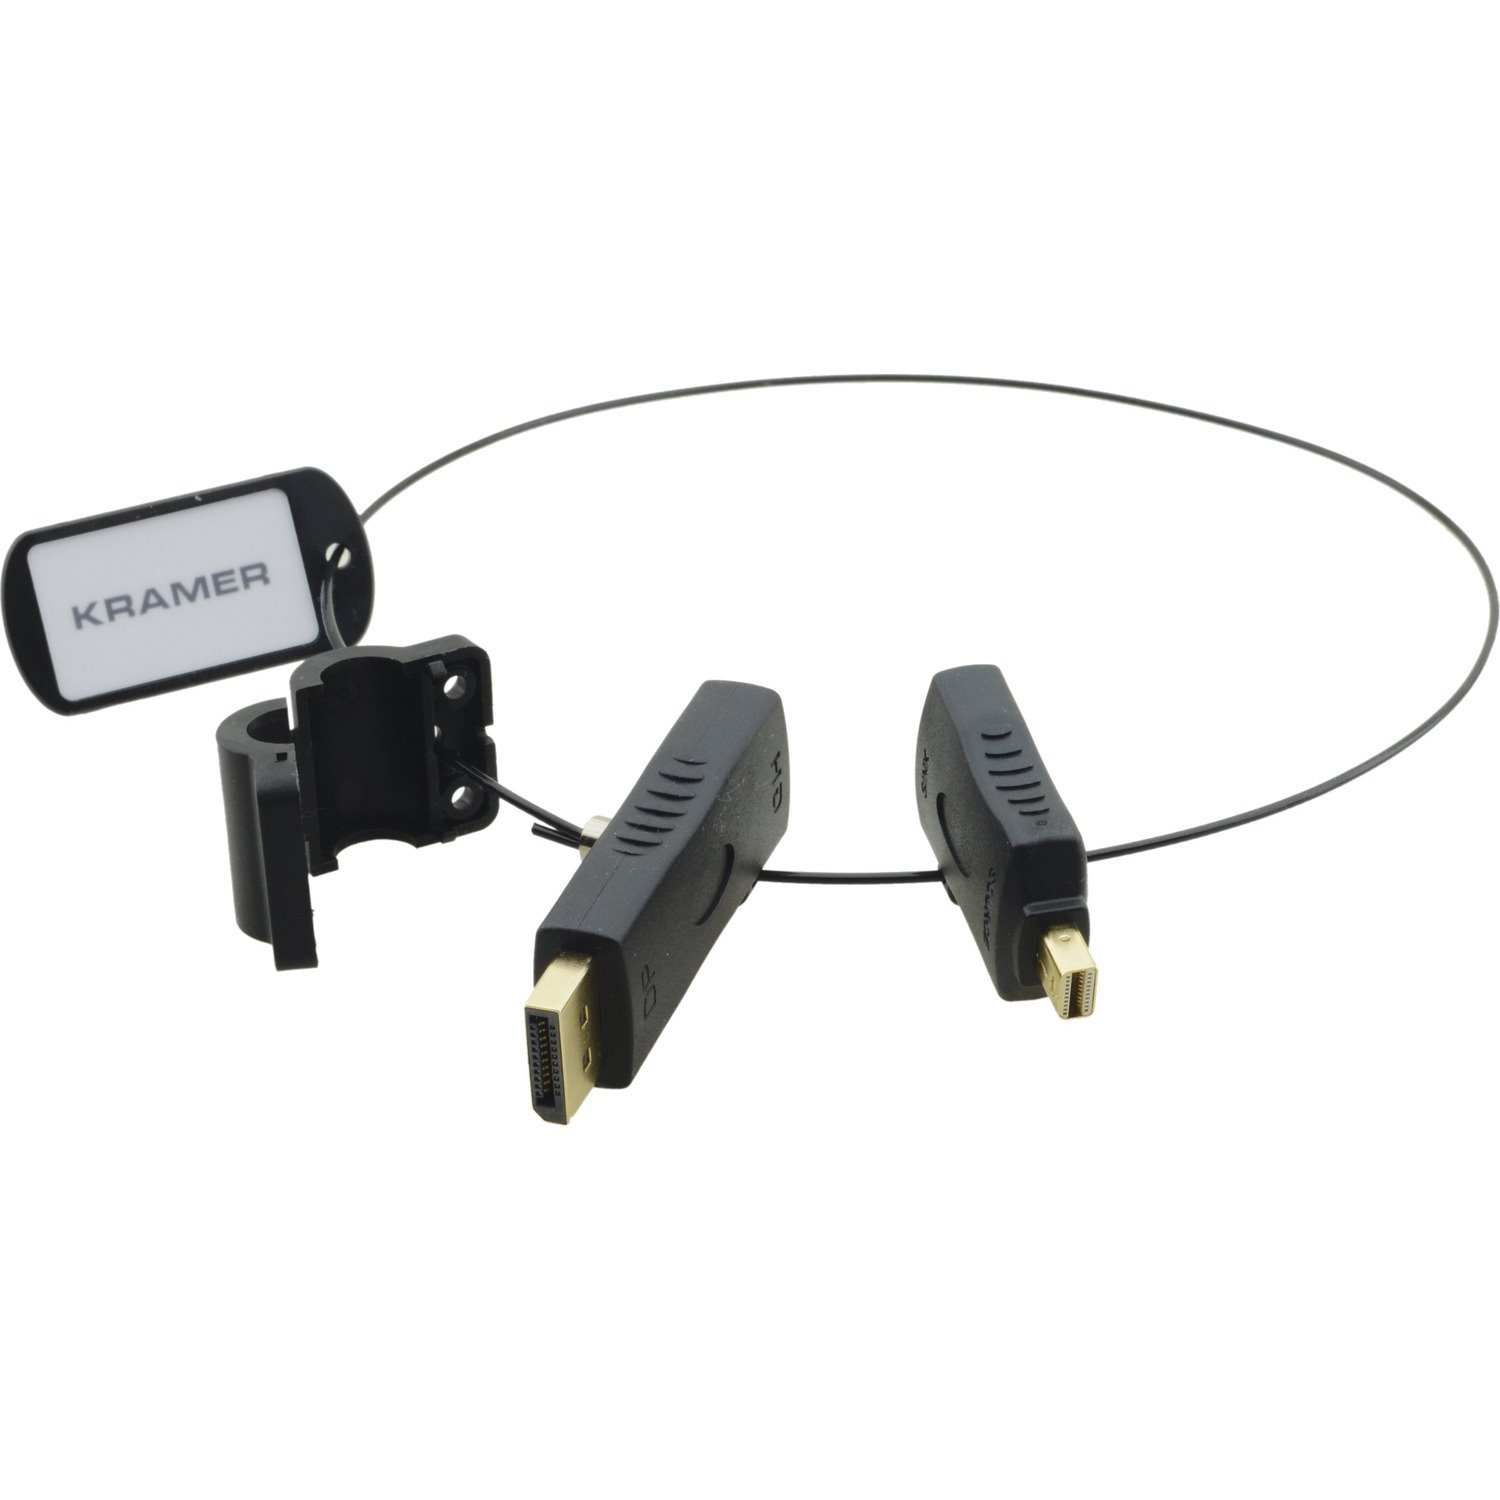 Kramer AD-RING HDMI Adapter Ring